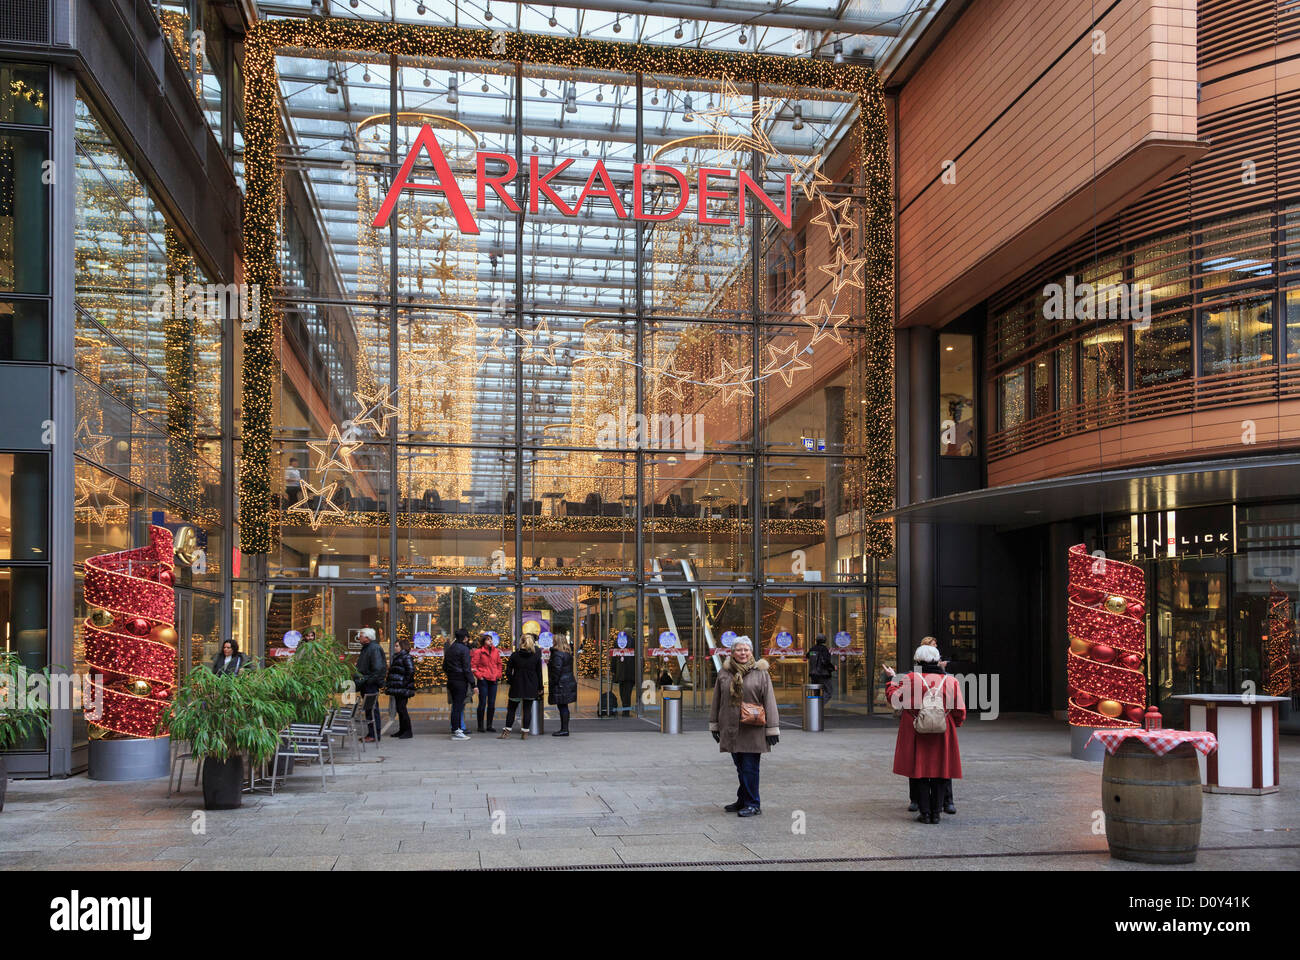 Eingang zum Einkaufszentrum Arkaden dekoriert für Weihnachten am Potsdamer Platz, Berlin City, Deutschland, Europa. Stockfoto